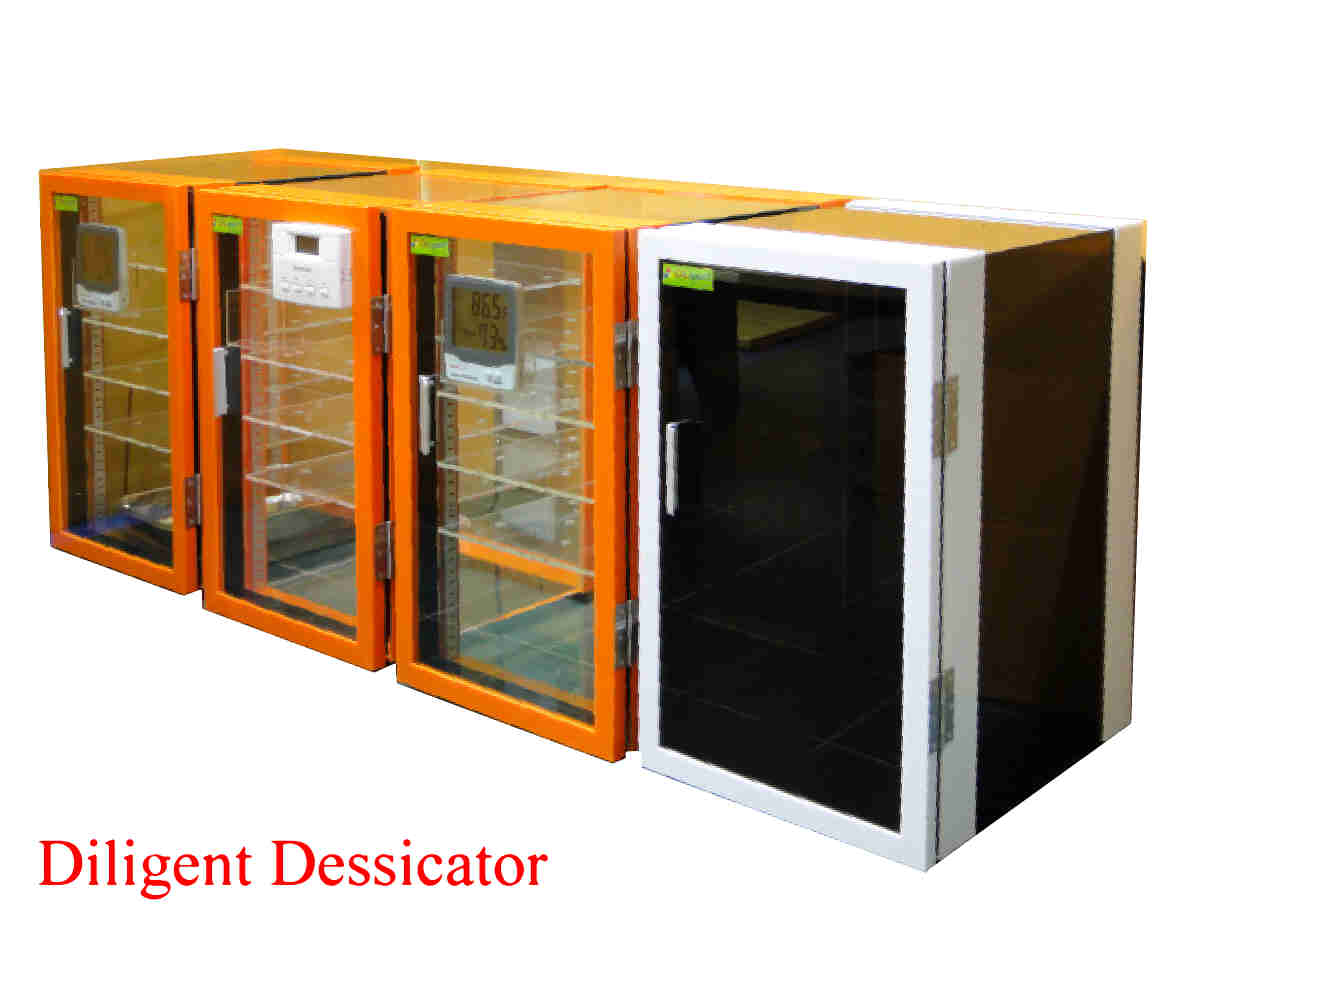 ตู้ดูดความชื้น Desiccator Cabinet แบบใช้ Silica gel Model DE-57 ทำจากพลาสติก 3